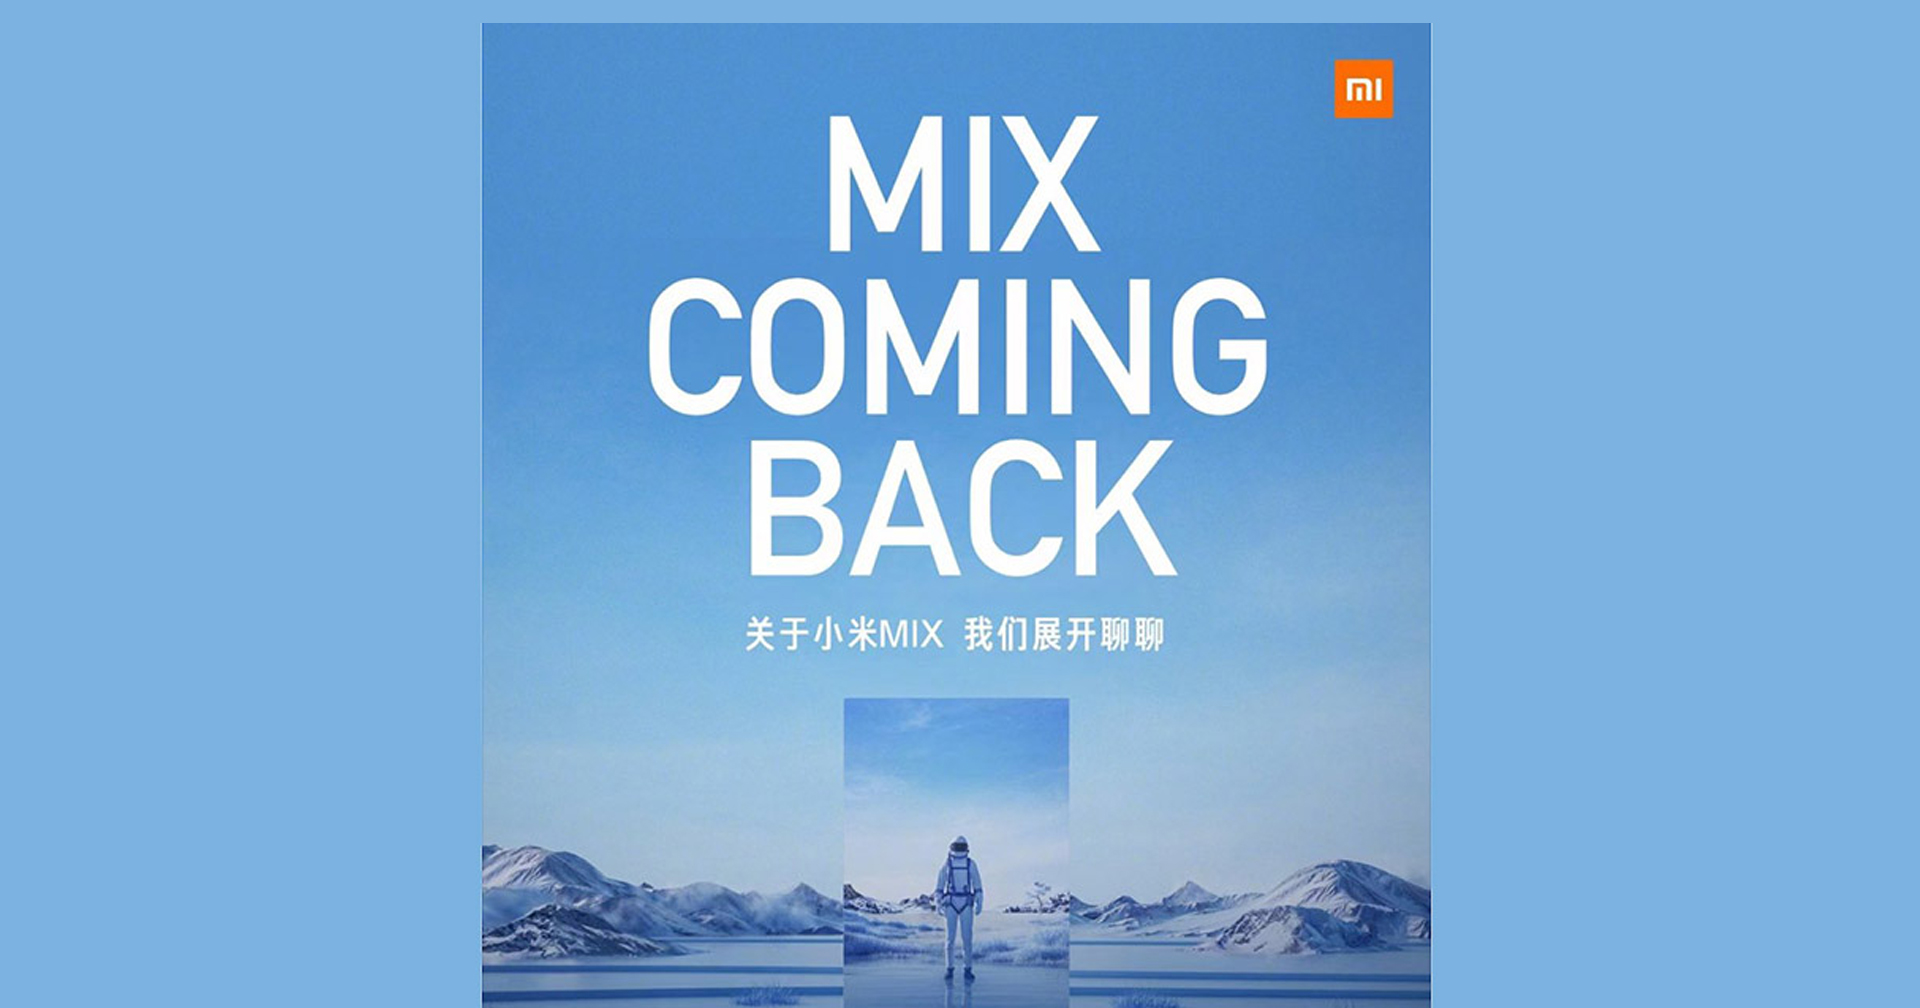 ยินดีต้อนรับกลับ! Xiaomi Mi MIX เตรียมกลับมาอีกครั้ง พบกัน 29 มีนาคมนี้